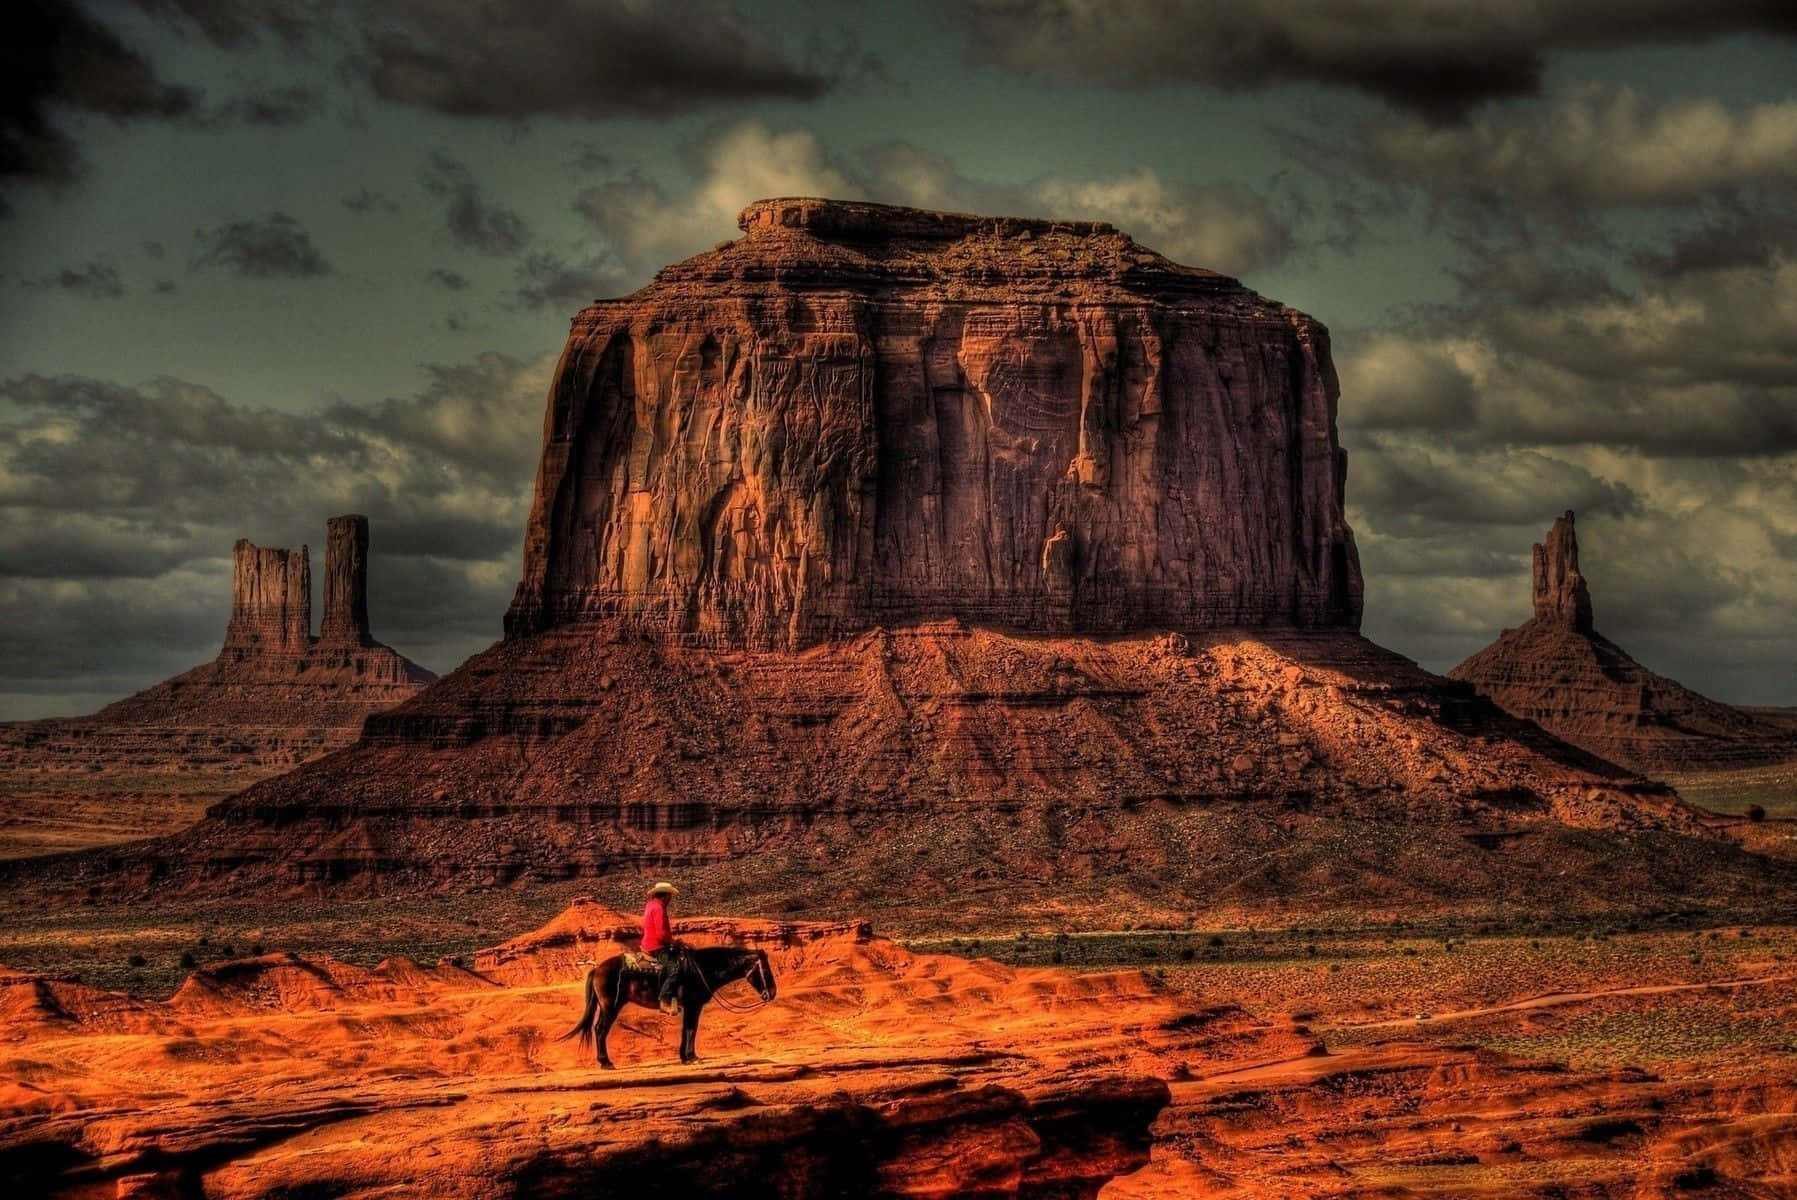 A group of cowboys riding horses through a canyon landscape